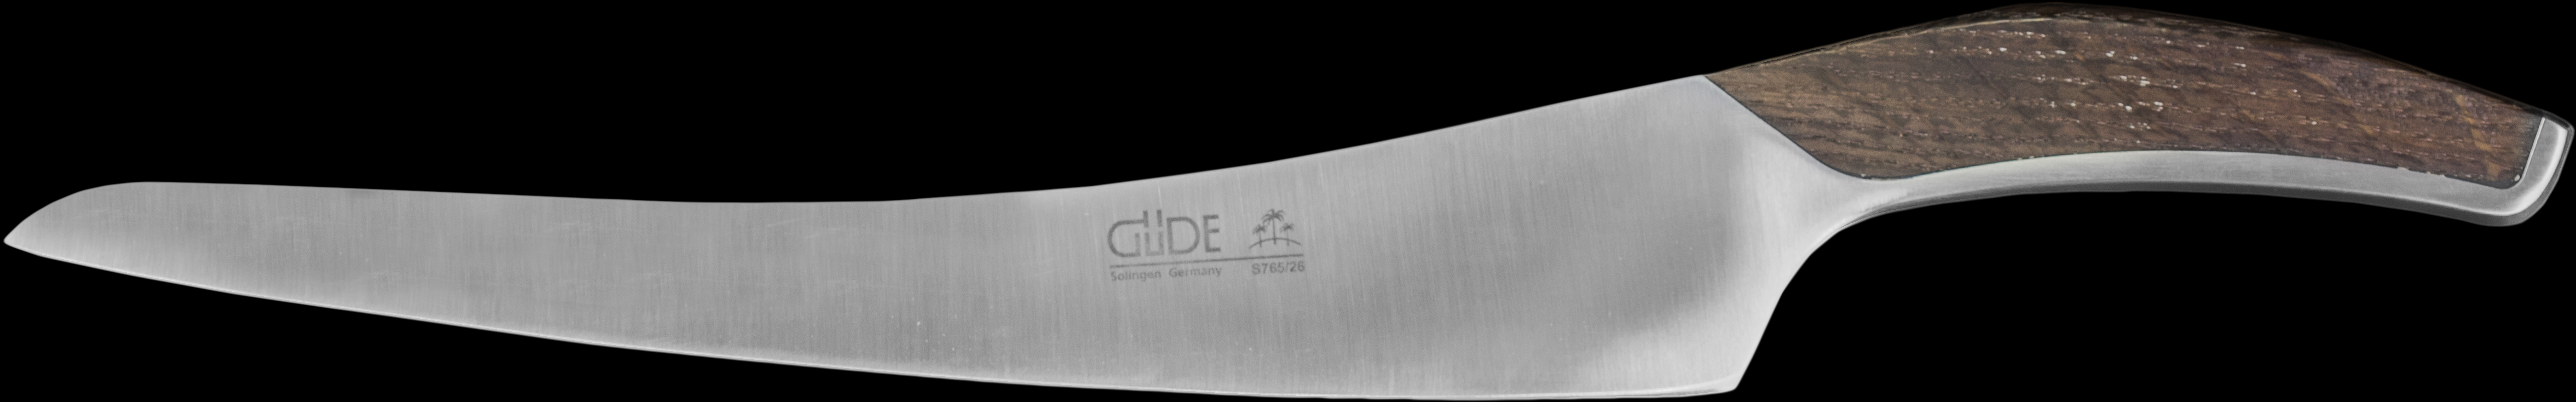 SYNCHROS Couteau à découper, 26cm - GÜDE SYNCHROS